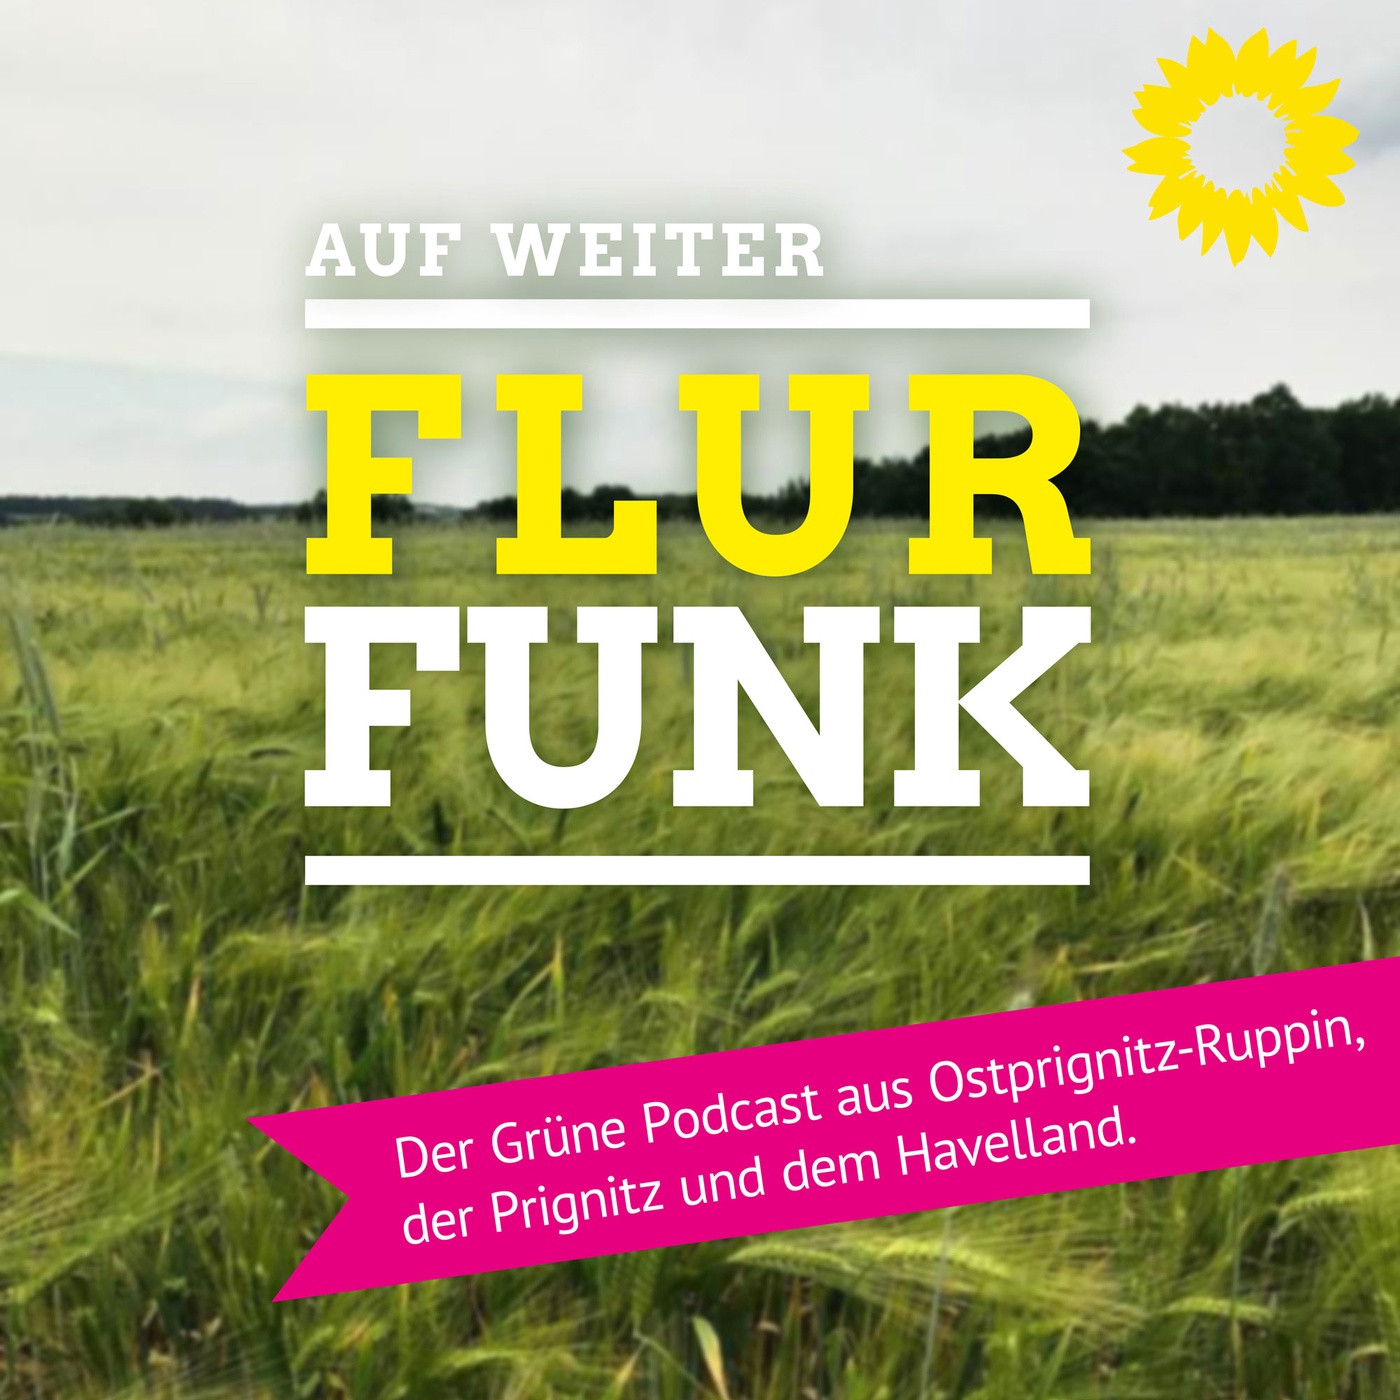 Flurfunk - der Grüne Podcast aus Ostprignitz-Ruppin, der Prignitz und dem Havelland